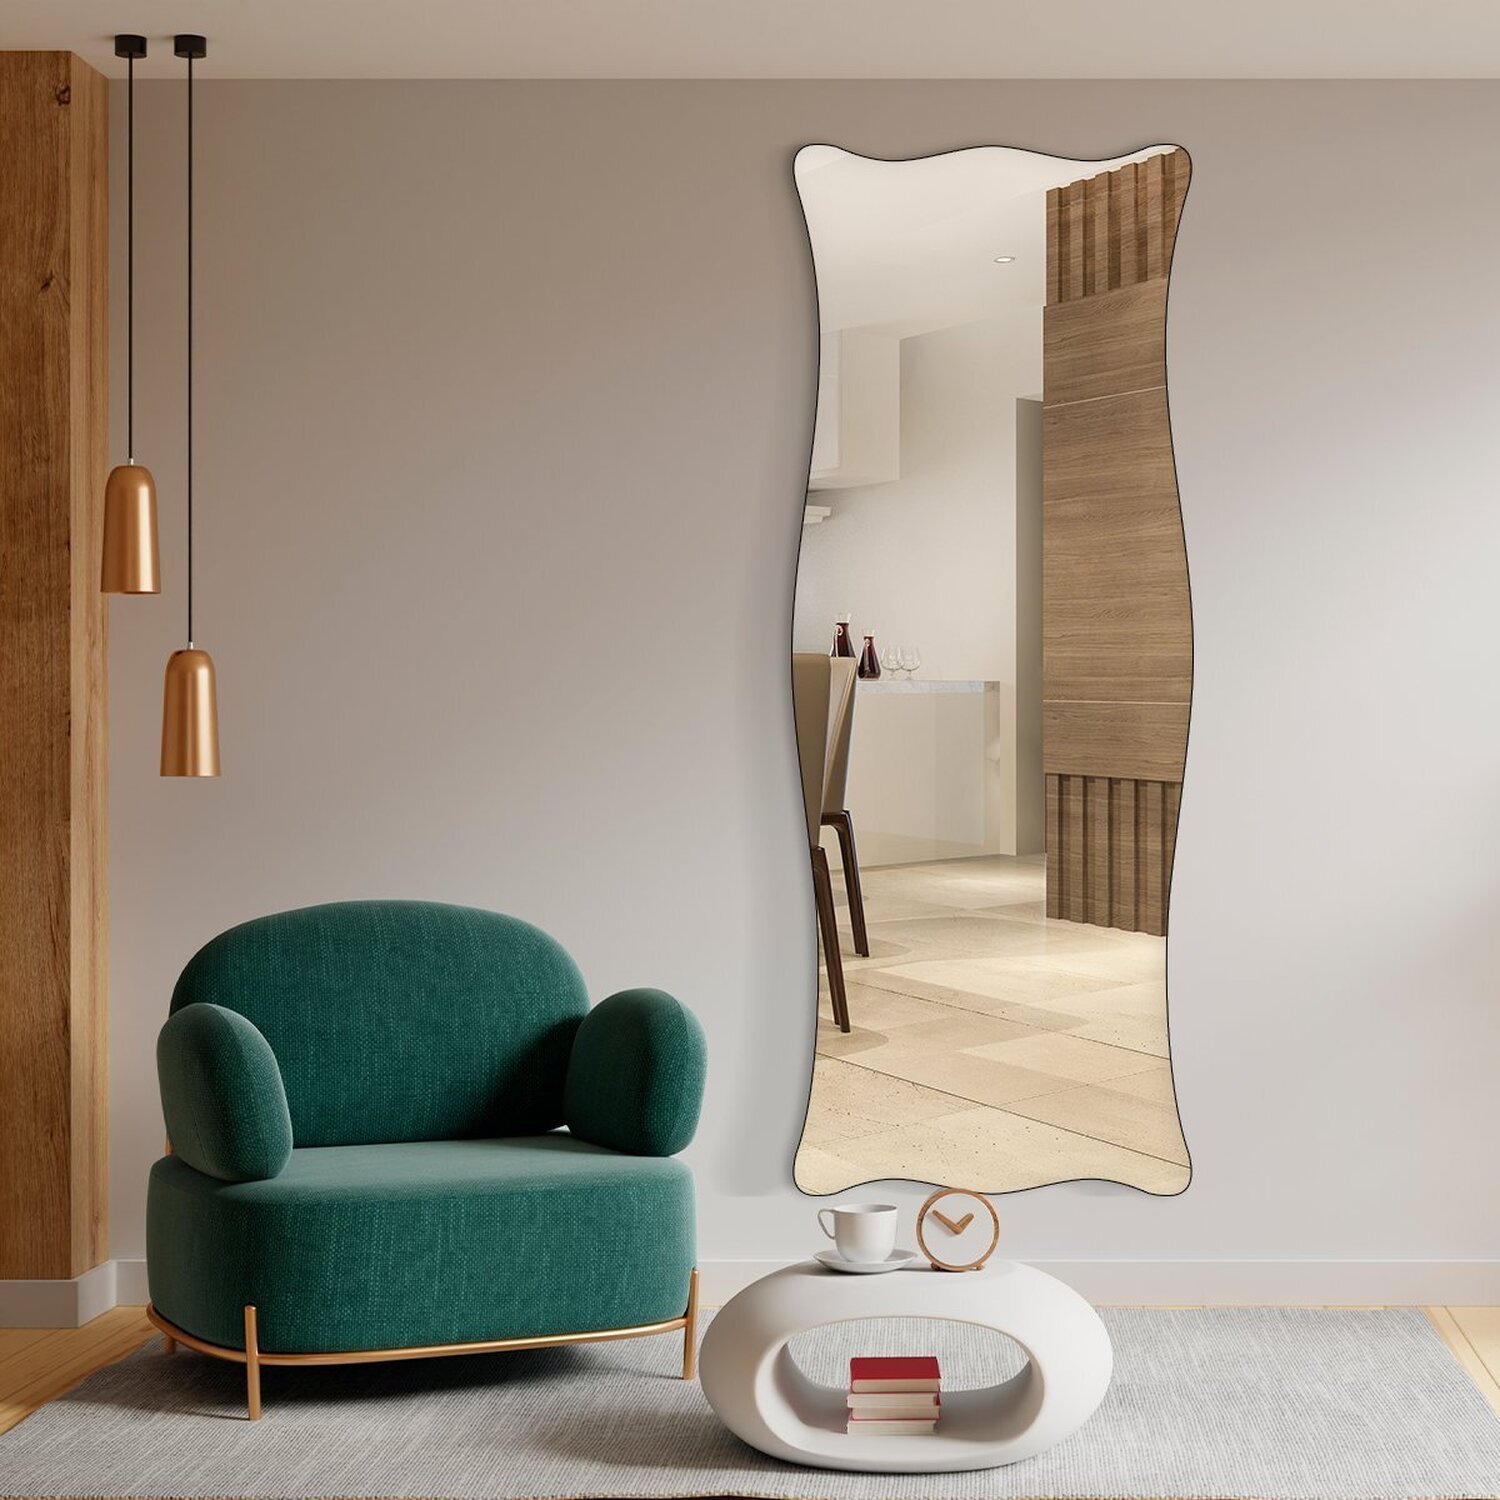 Espelho Corpo Inteiro Moderno do Pinterest 70x170cm Paris - 4